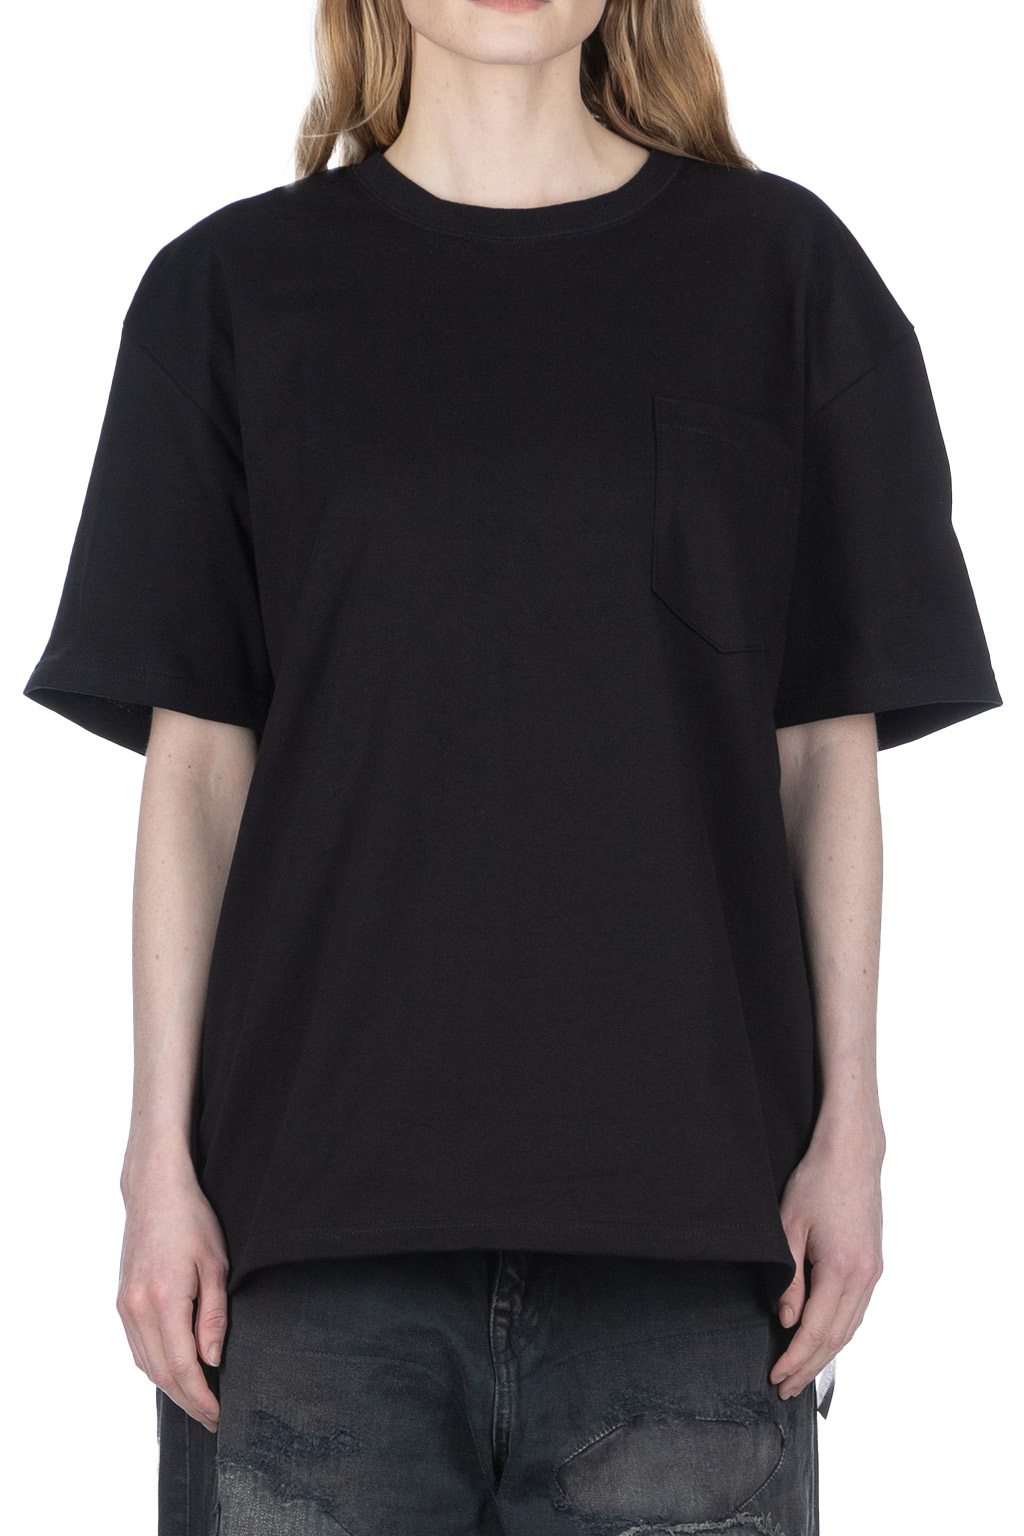 Groversons Paris Beauty Women's Cotton Rich Vector Crew Neck Design T-Shirt  Combo (COMTSHIRT38)